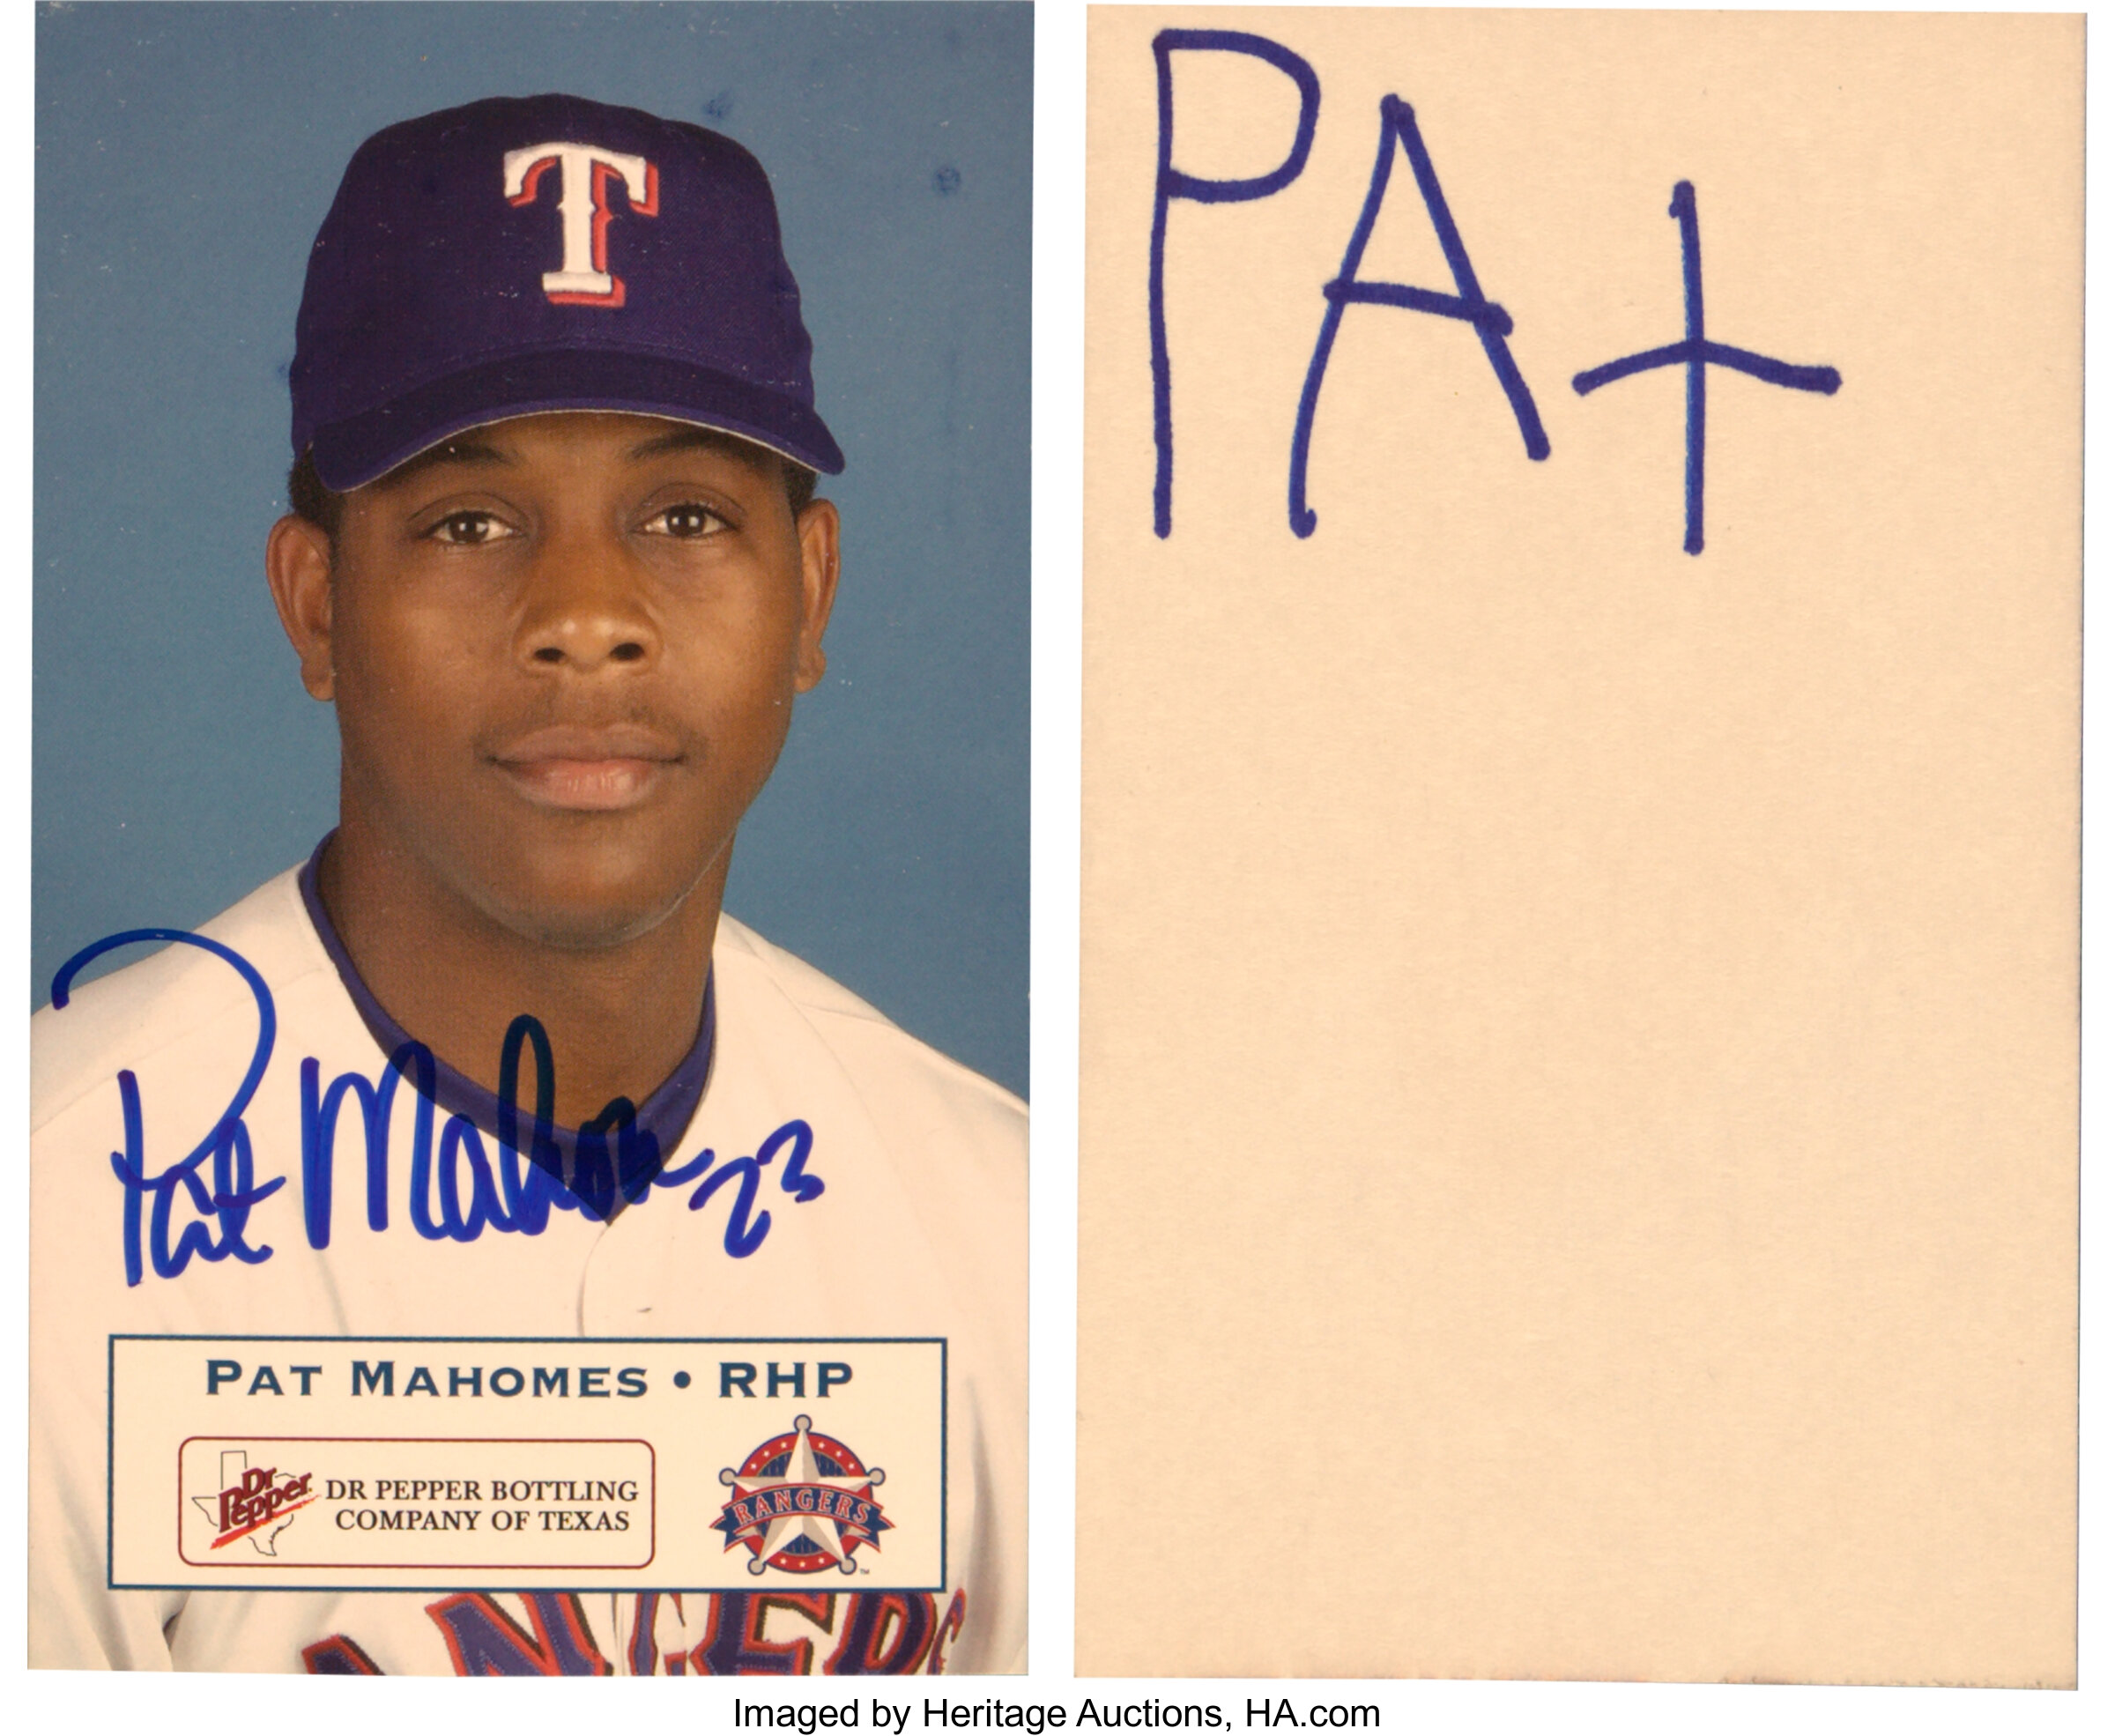 Patrick Mahomes' Dad Pat Mahomes Sr. Is Former MLB Player